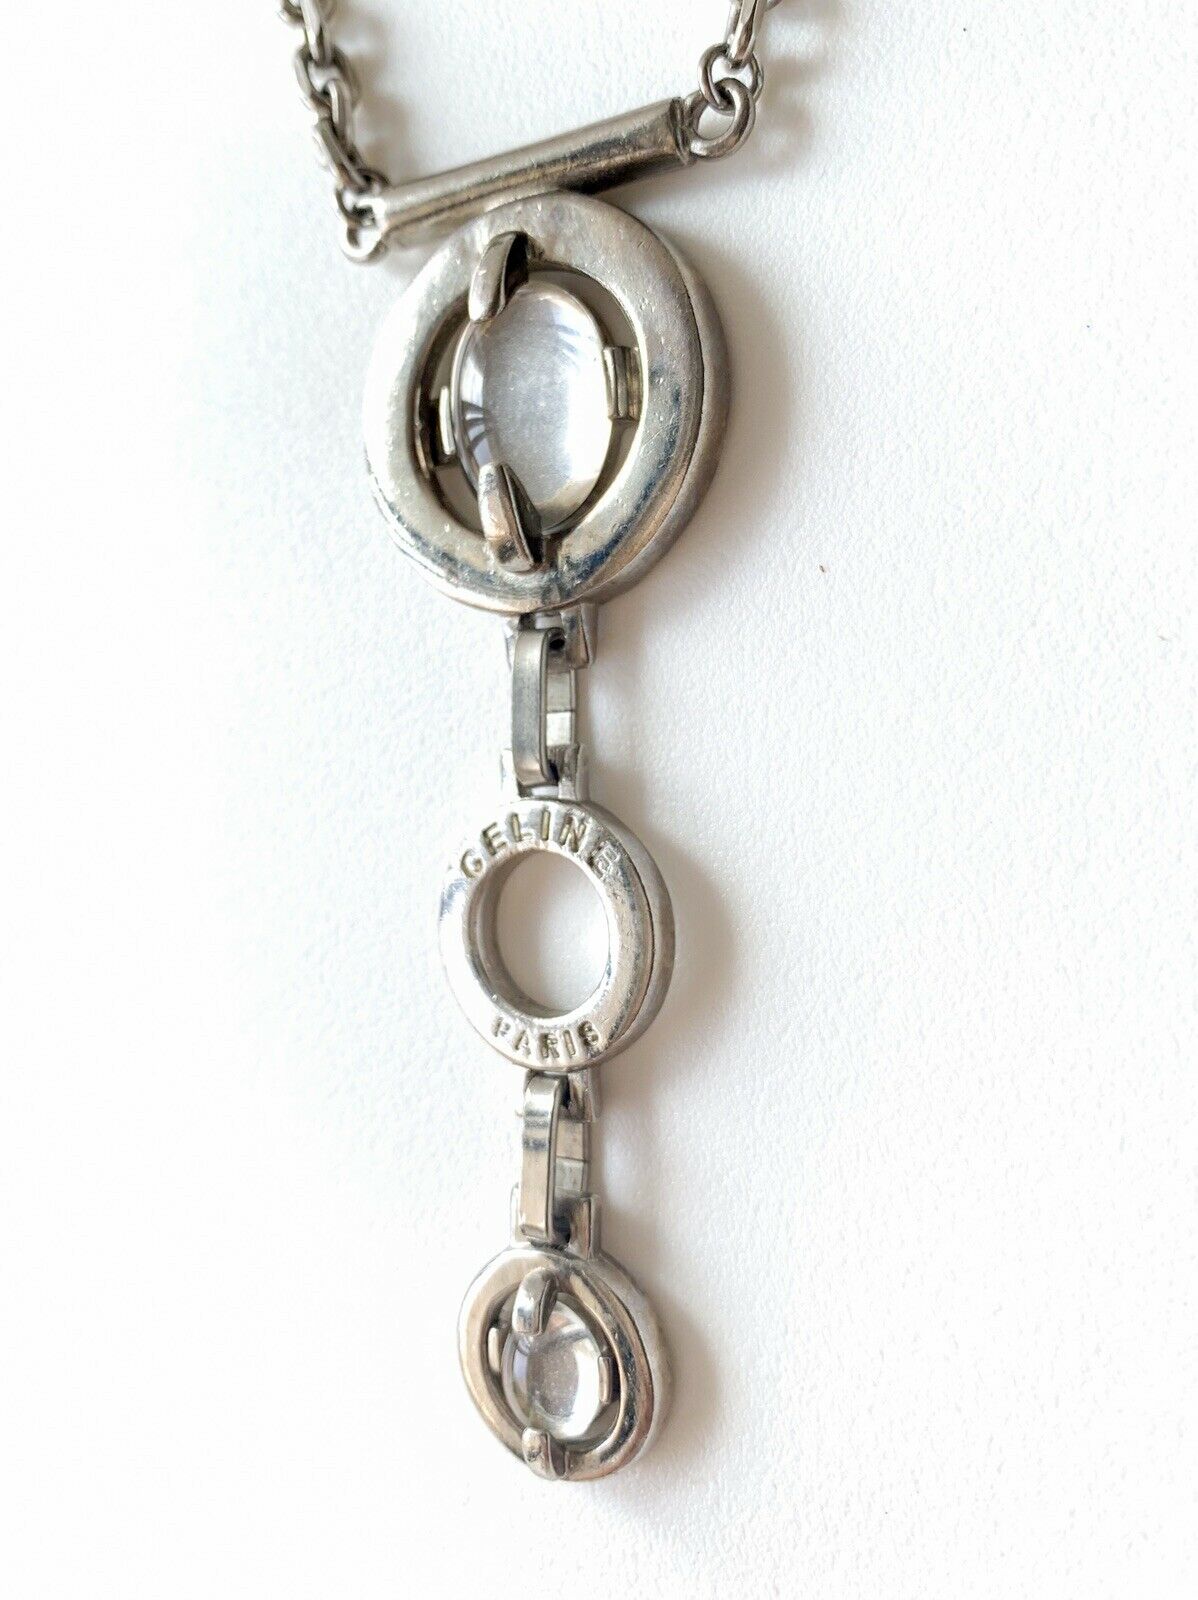 CELINE PARIS Silver Tone Chain Necklace Vintage Cabochon Glass